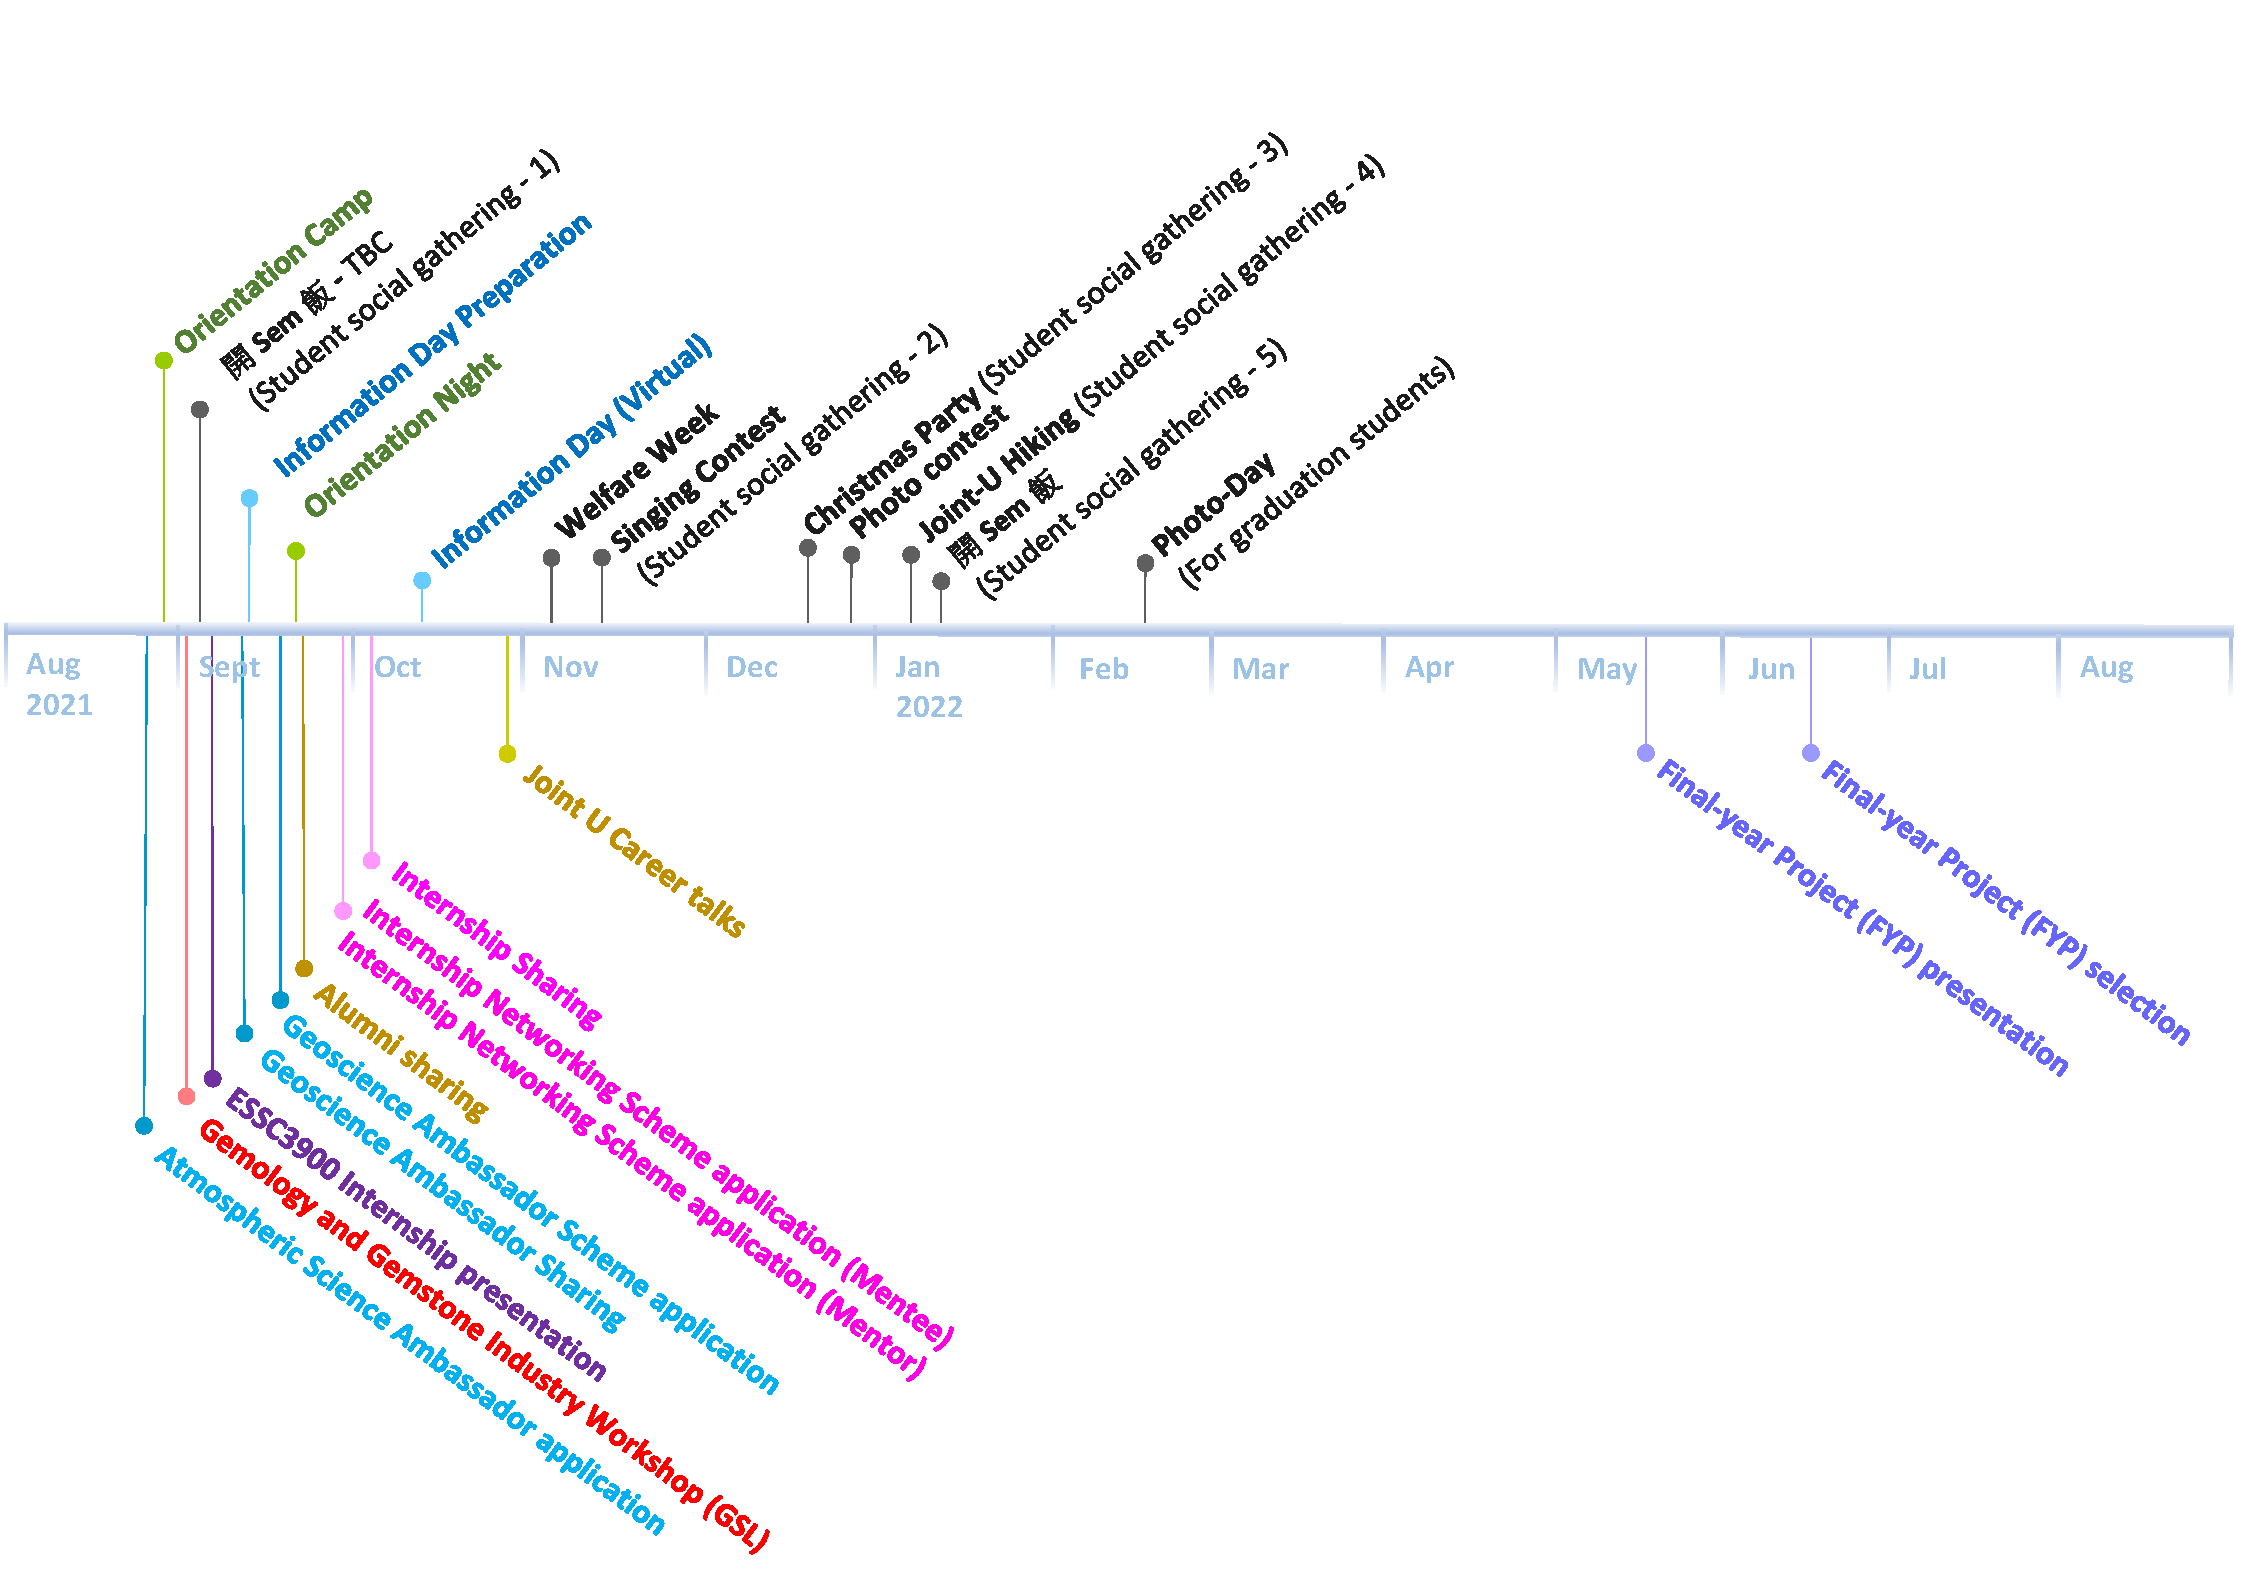 ESSC Activities Timeline